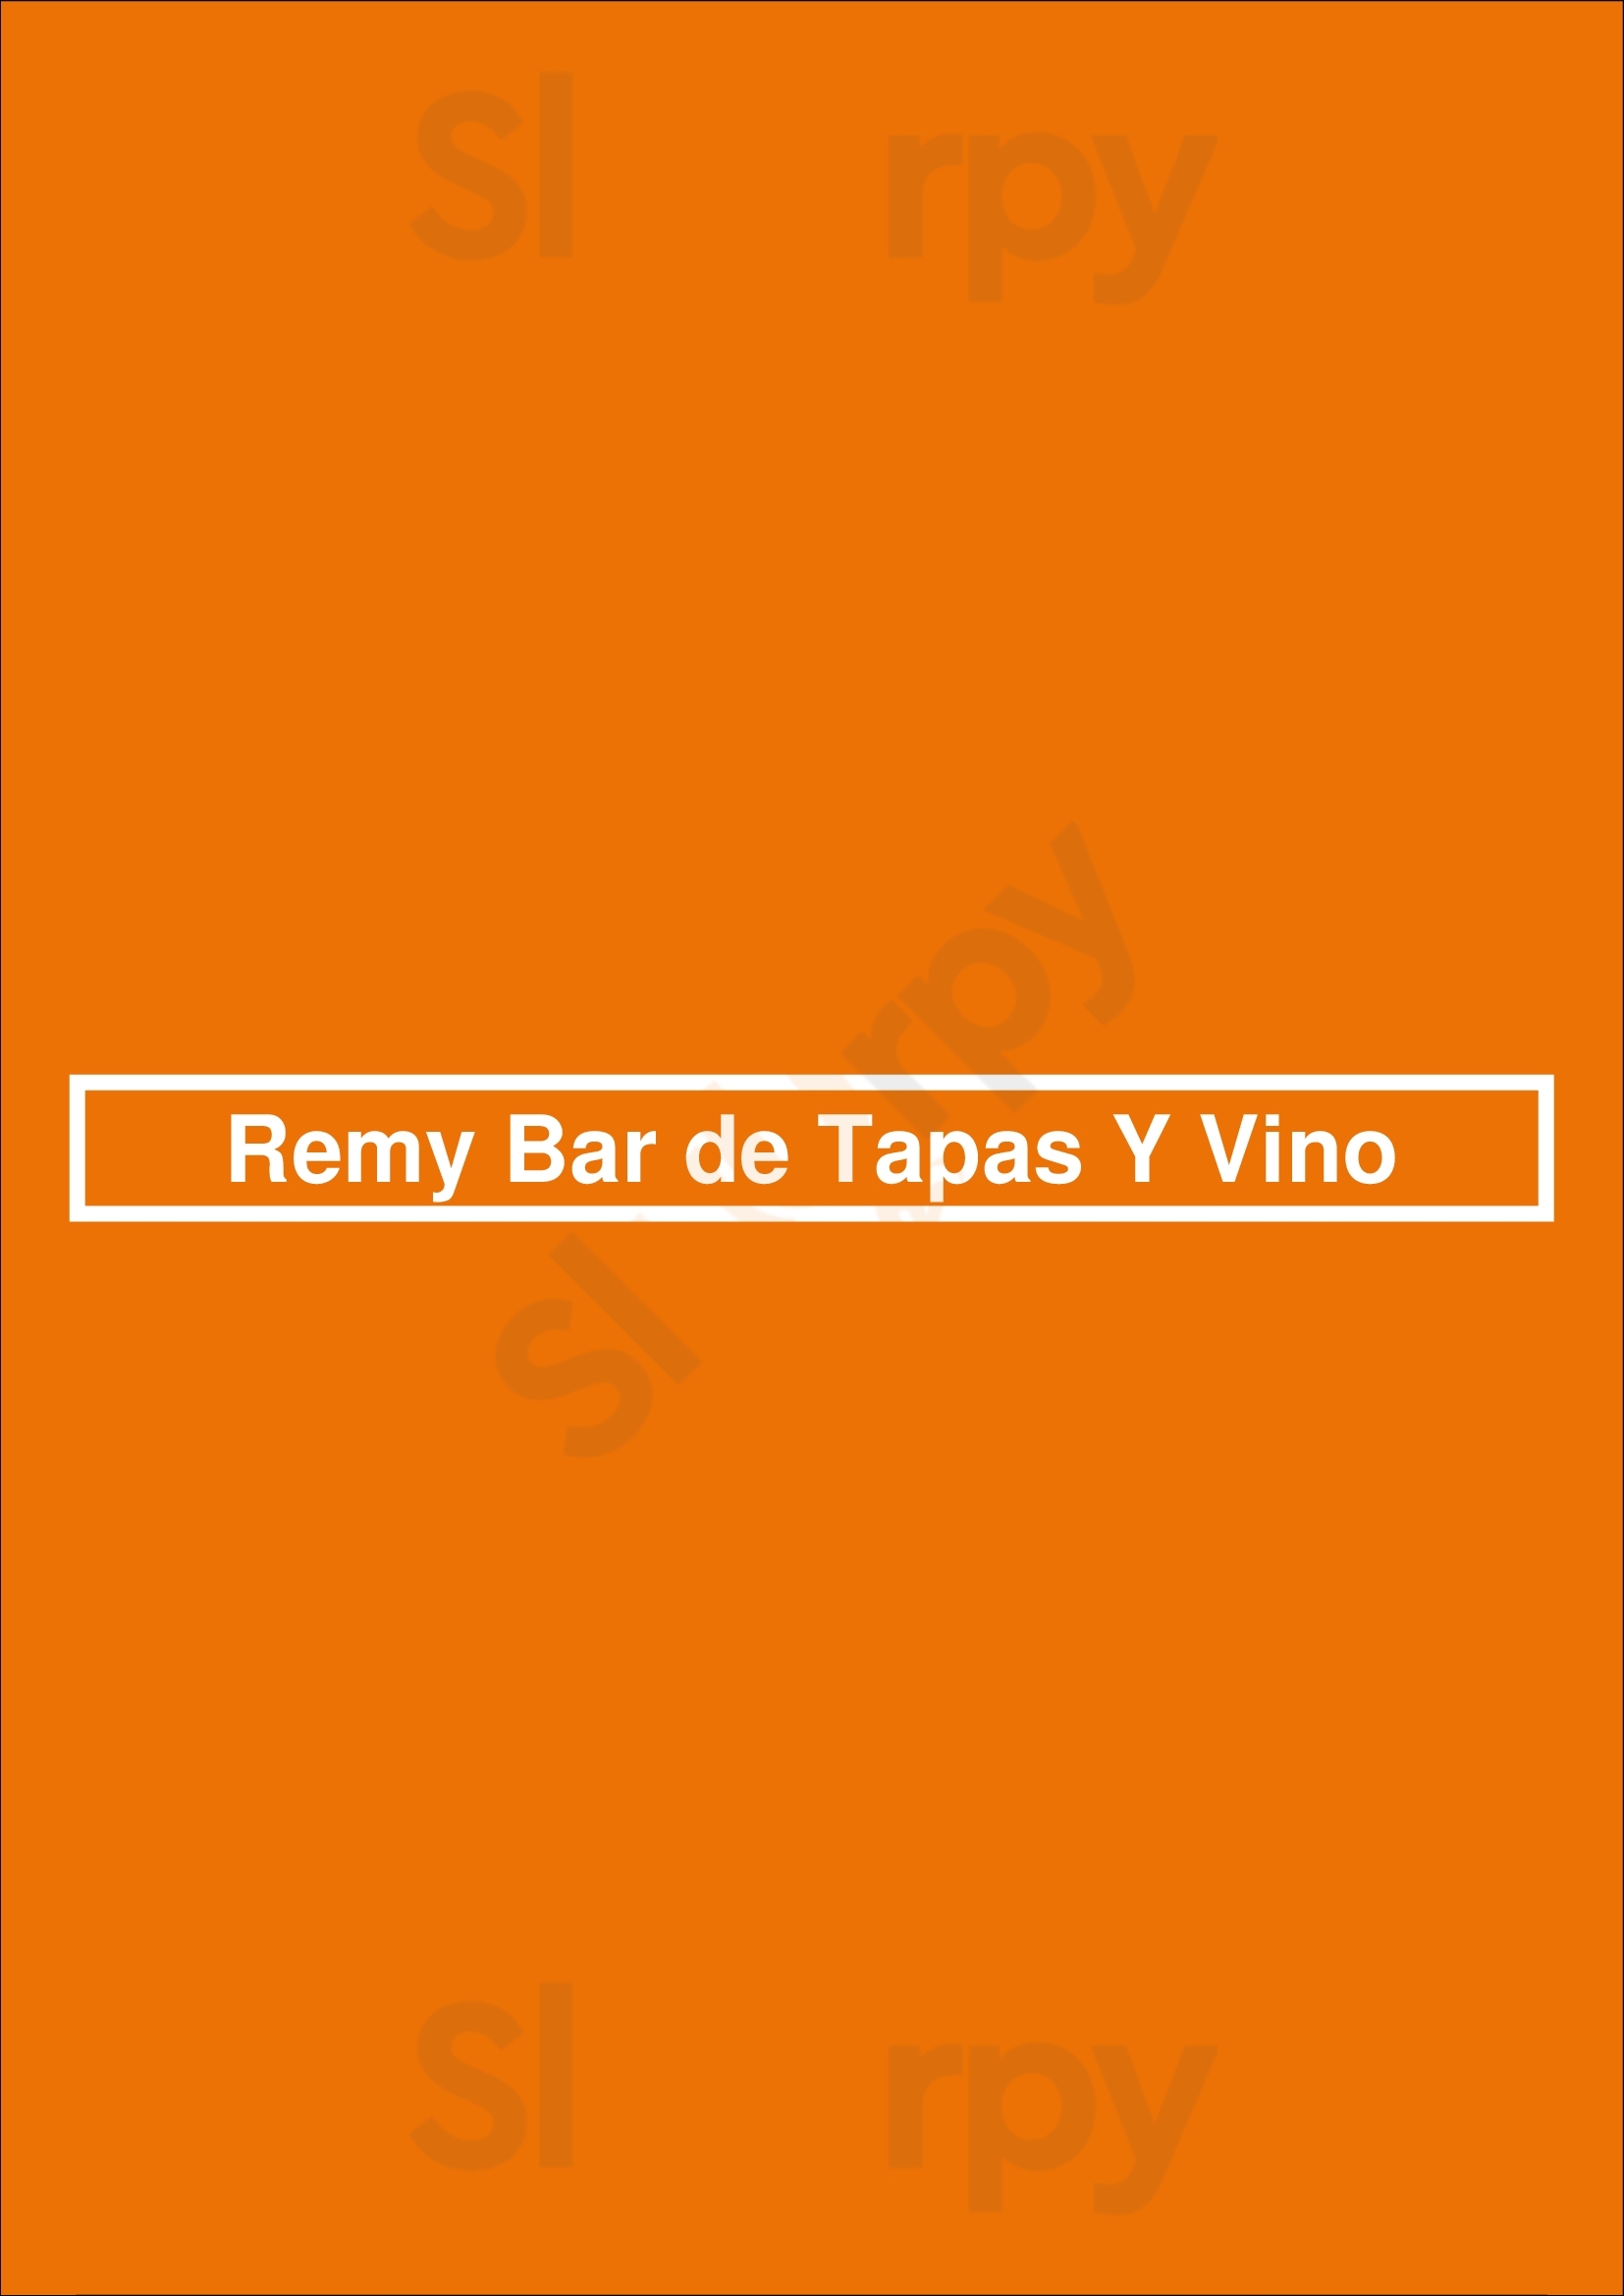 Remy Bar De Tapas Y Vino Malvern Menu - 1